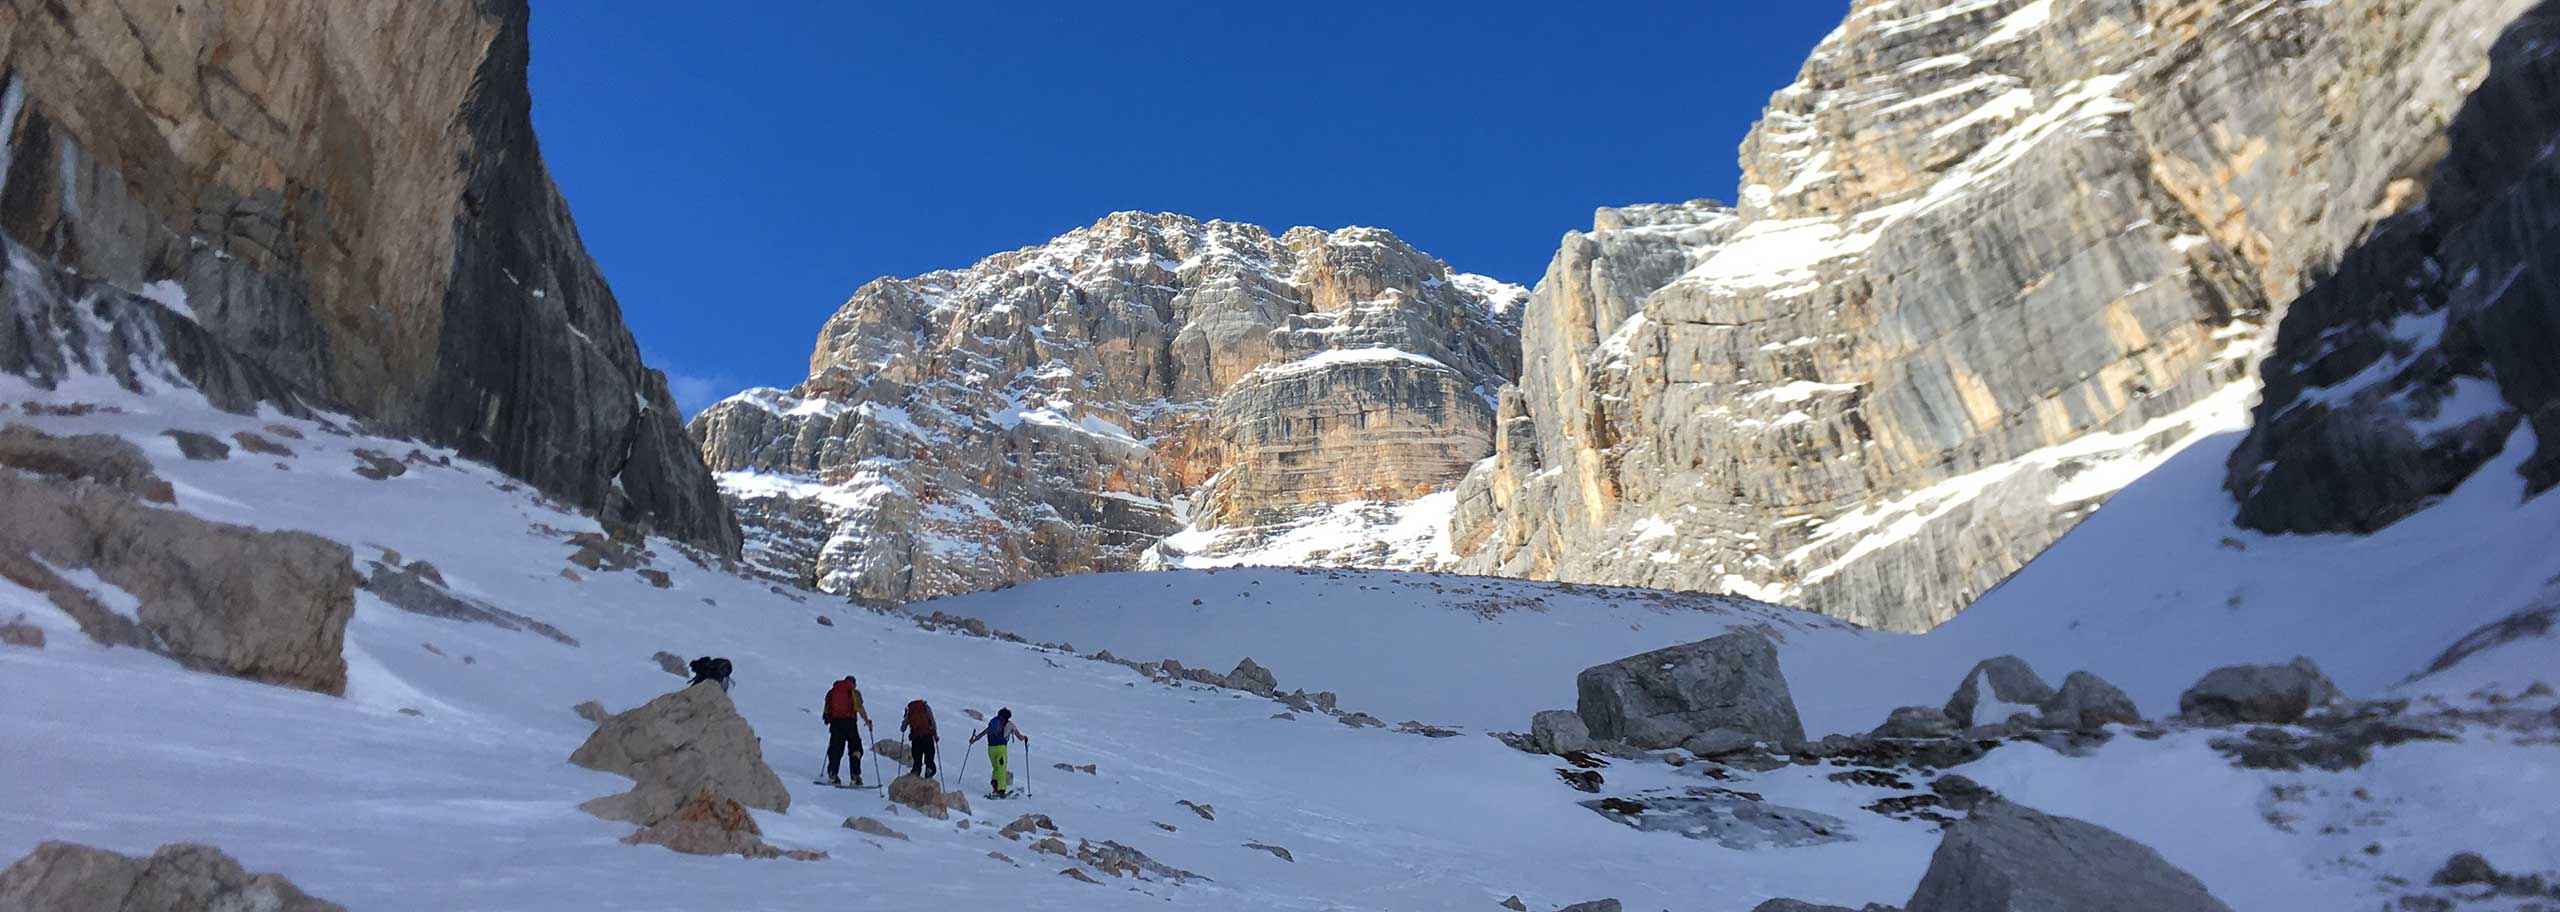 Sci alpinismo in Alta Badia, Escursioni e Corsi Sci Alpinistici